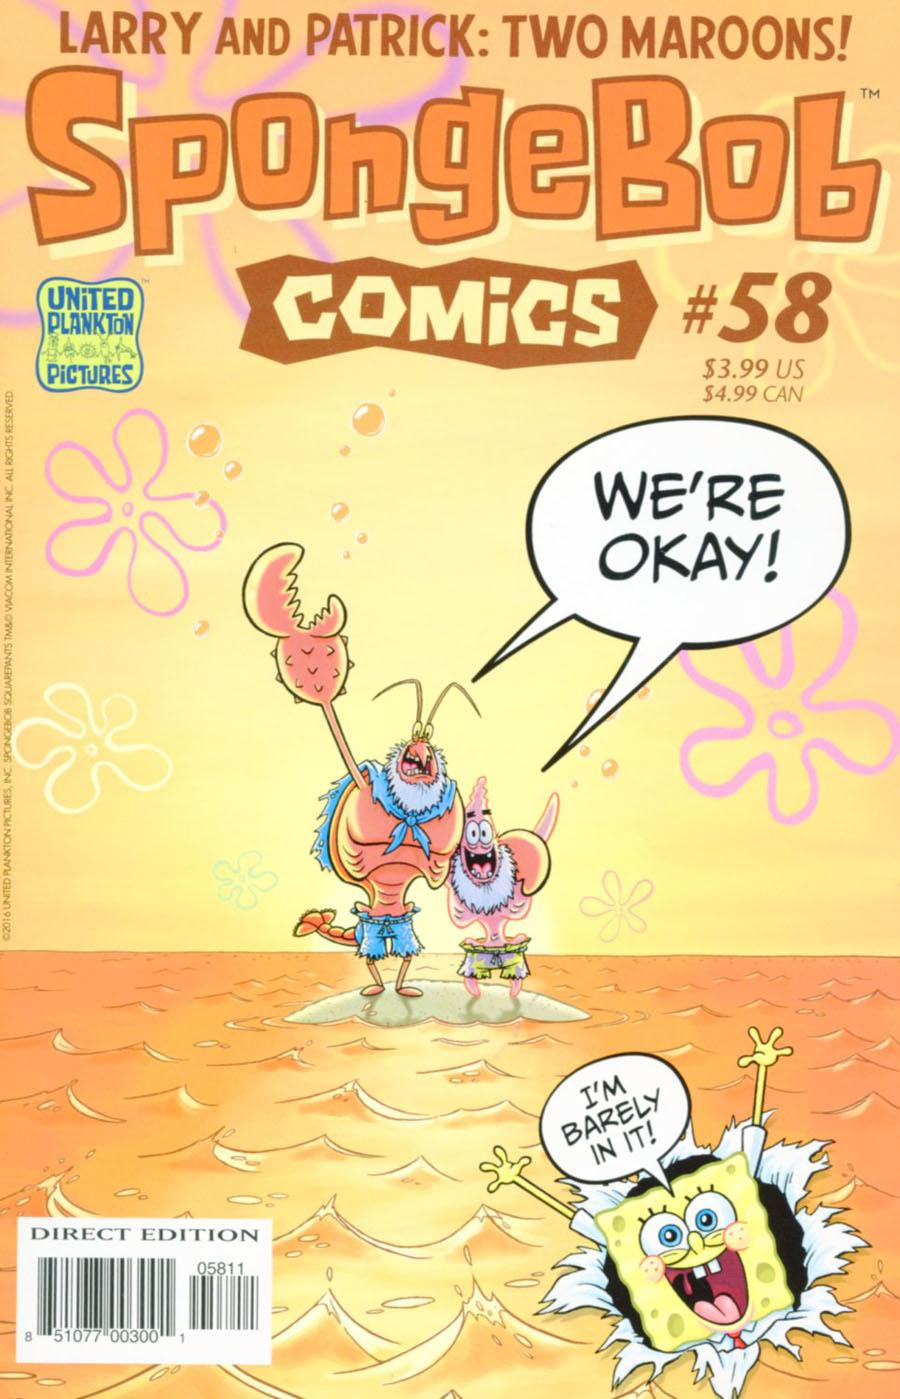 SpongeBob Comics Vol. 1 #58